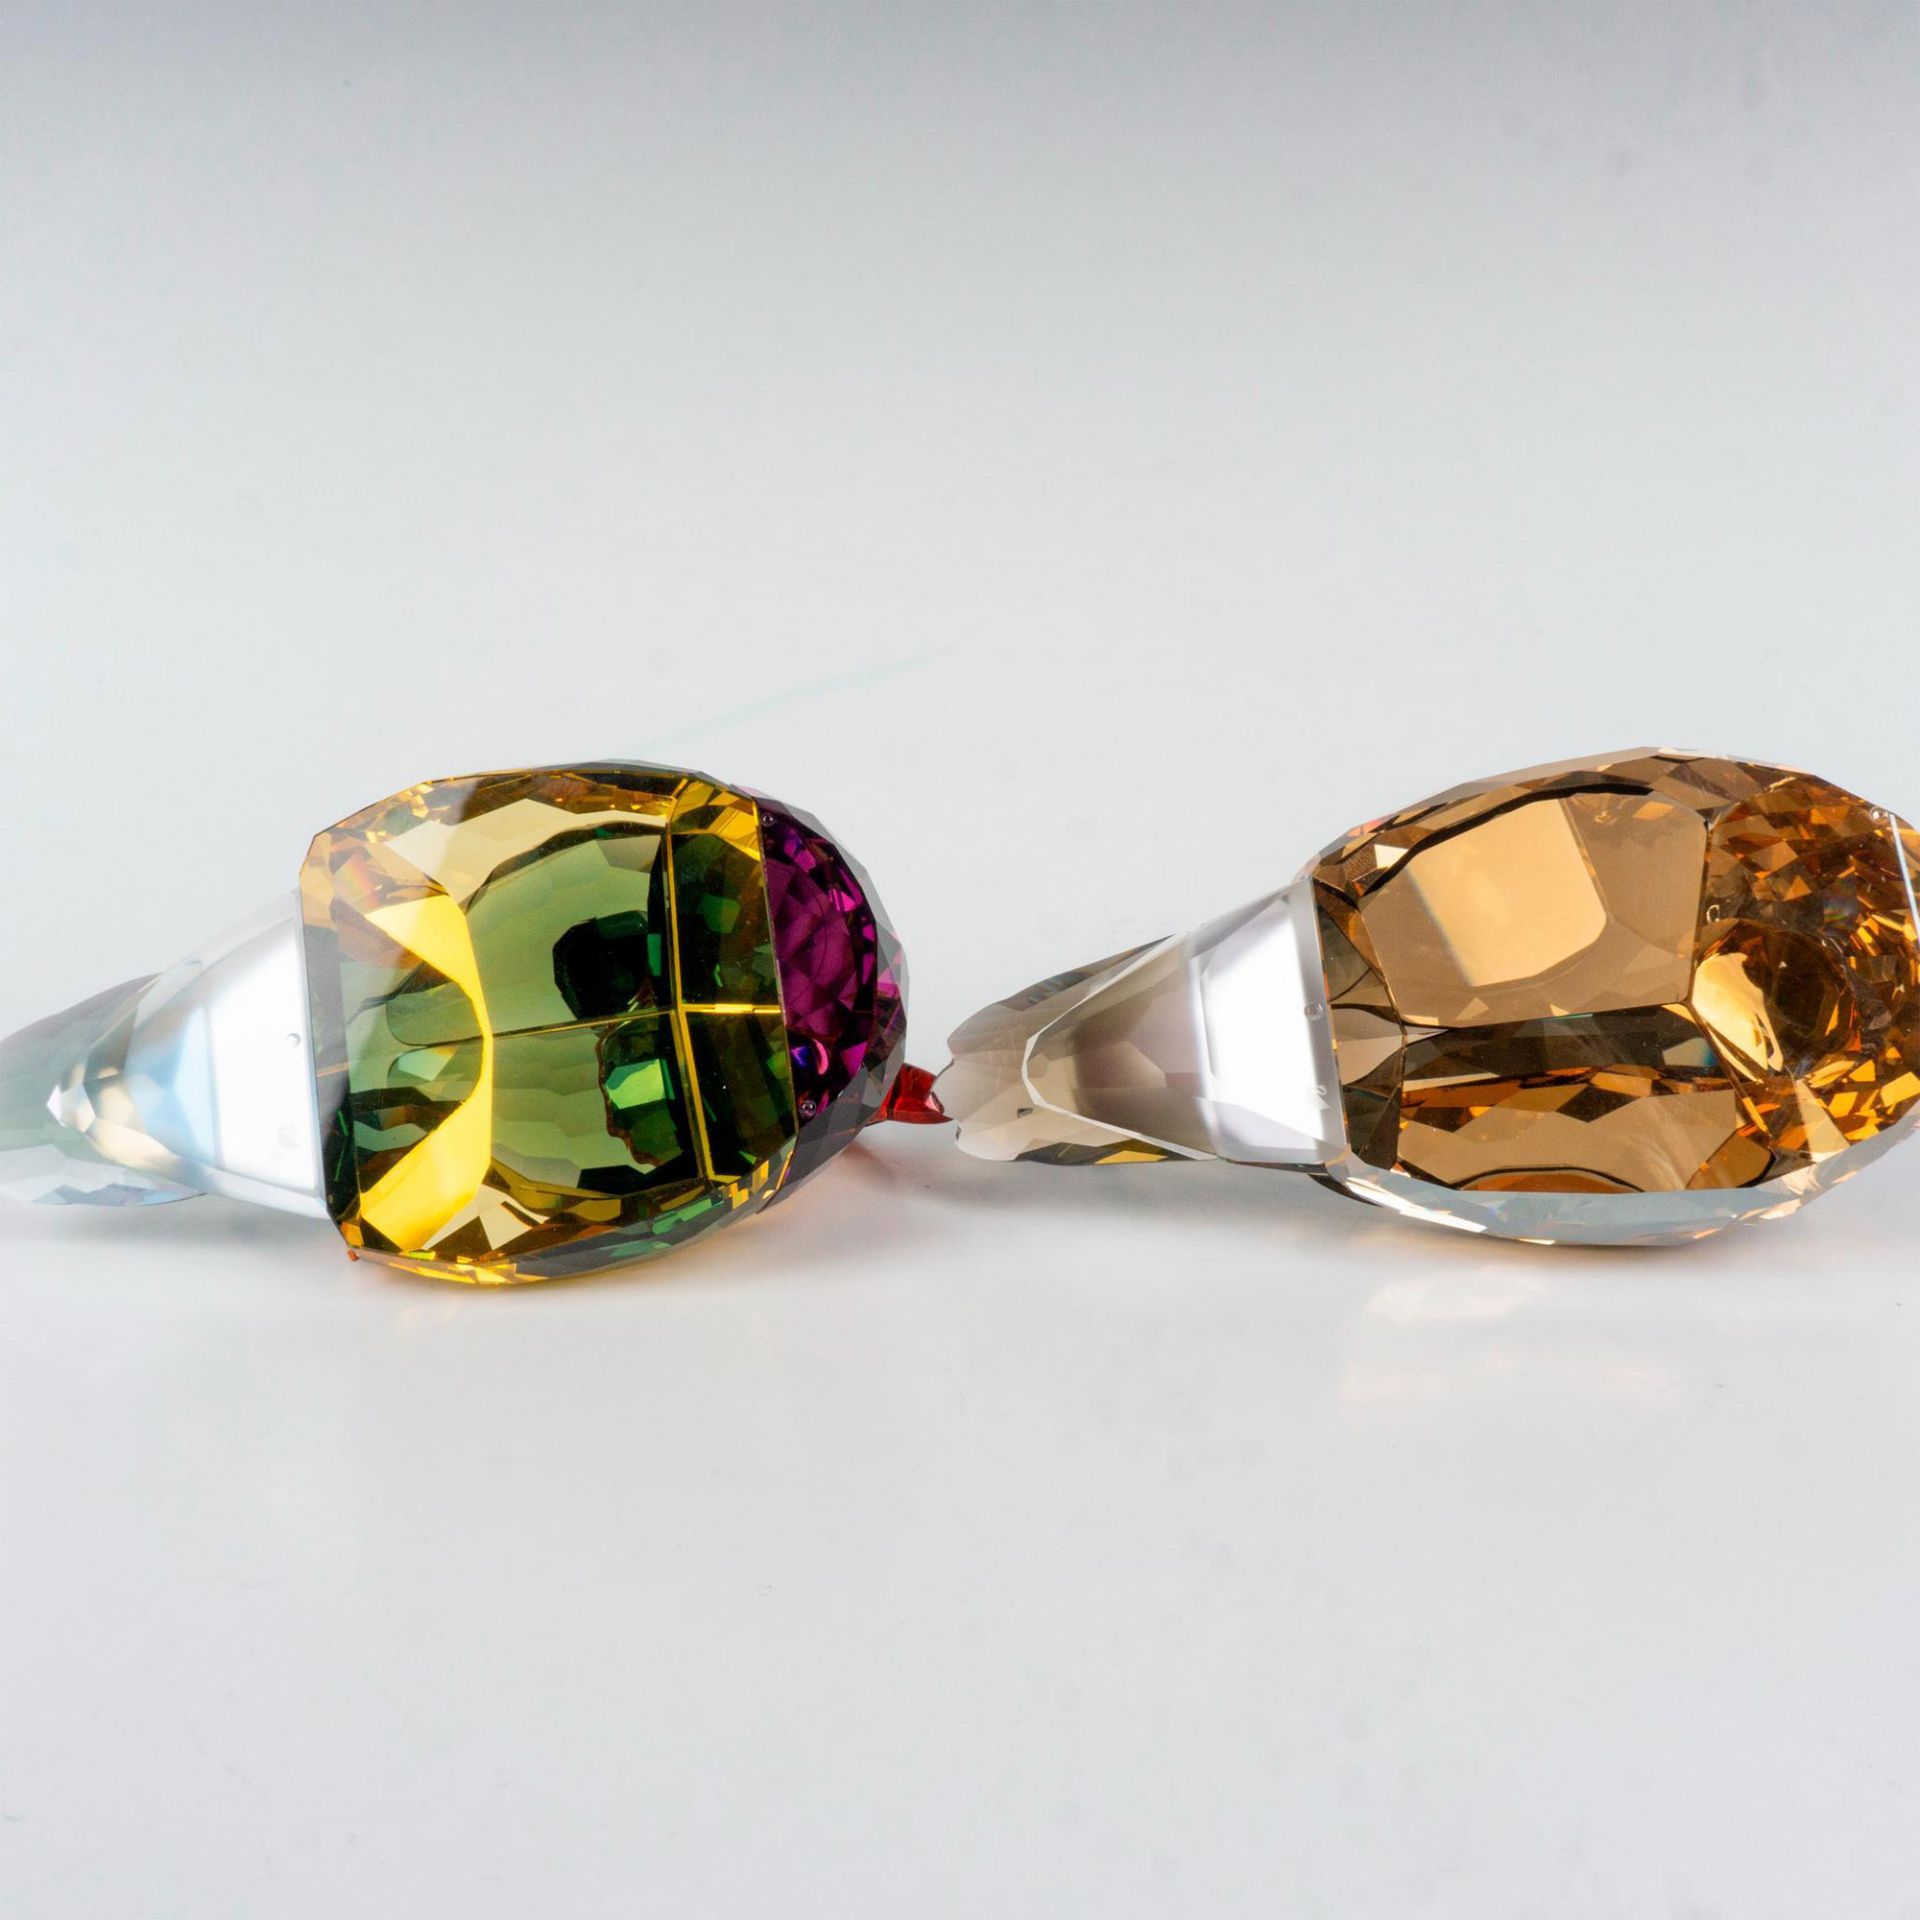 Swarovski Crystal Figurines, Mandarin Ducks - Image 3 of 4